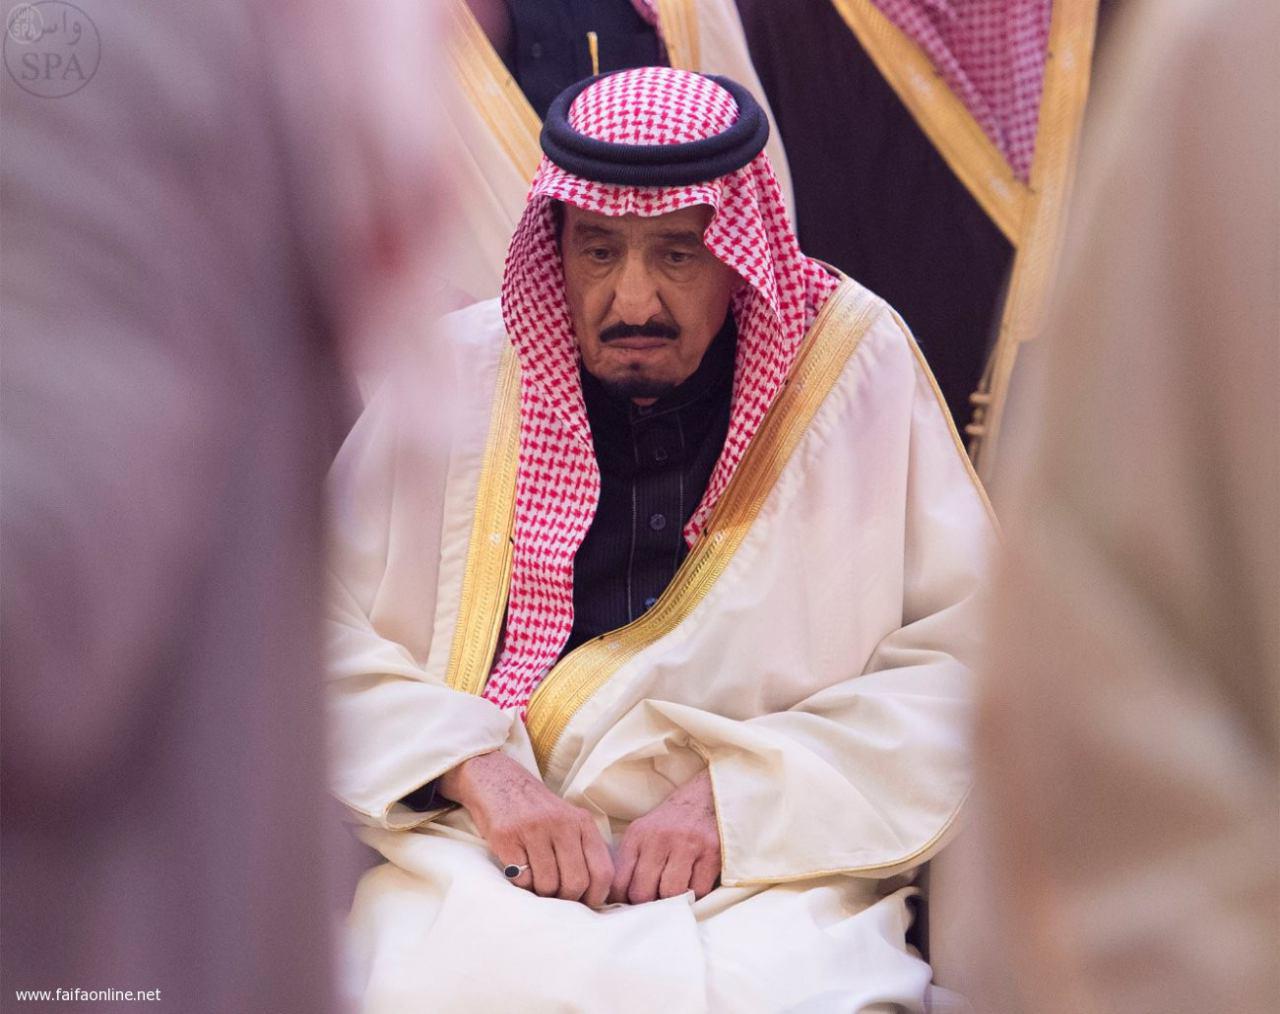 تصویر حال پادشاه عربستان وخیم است